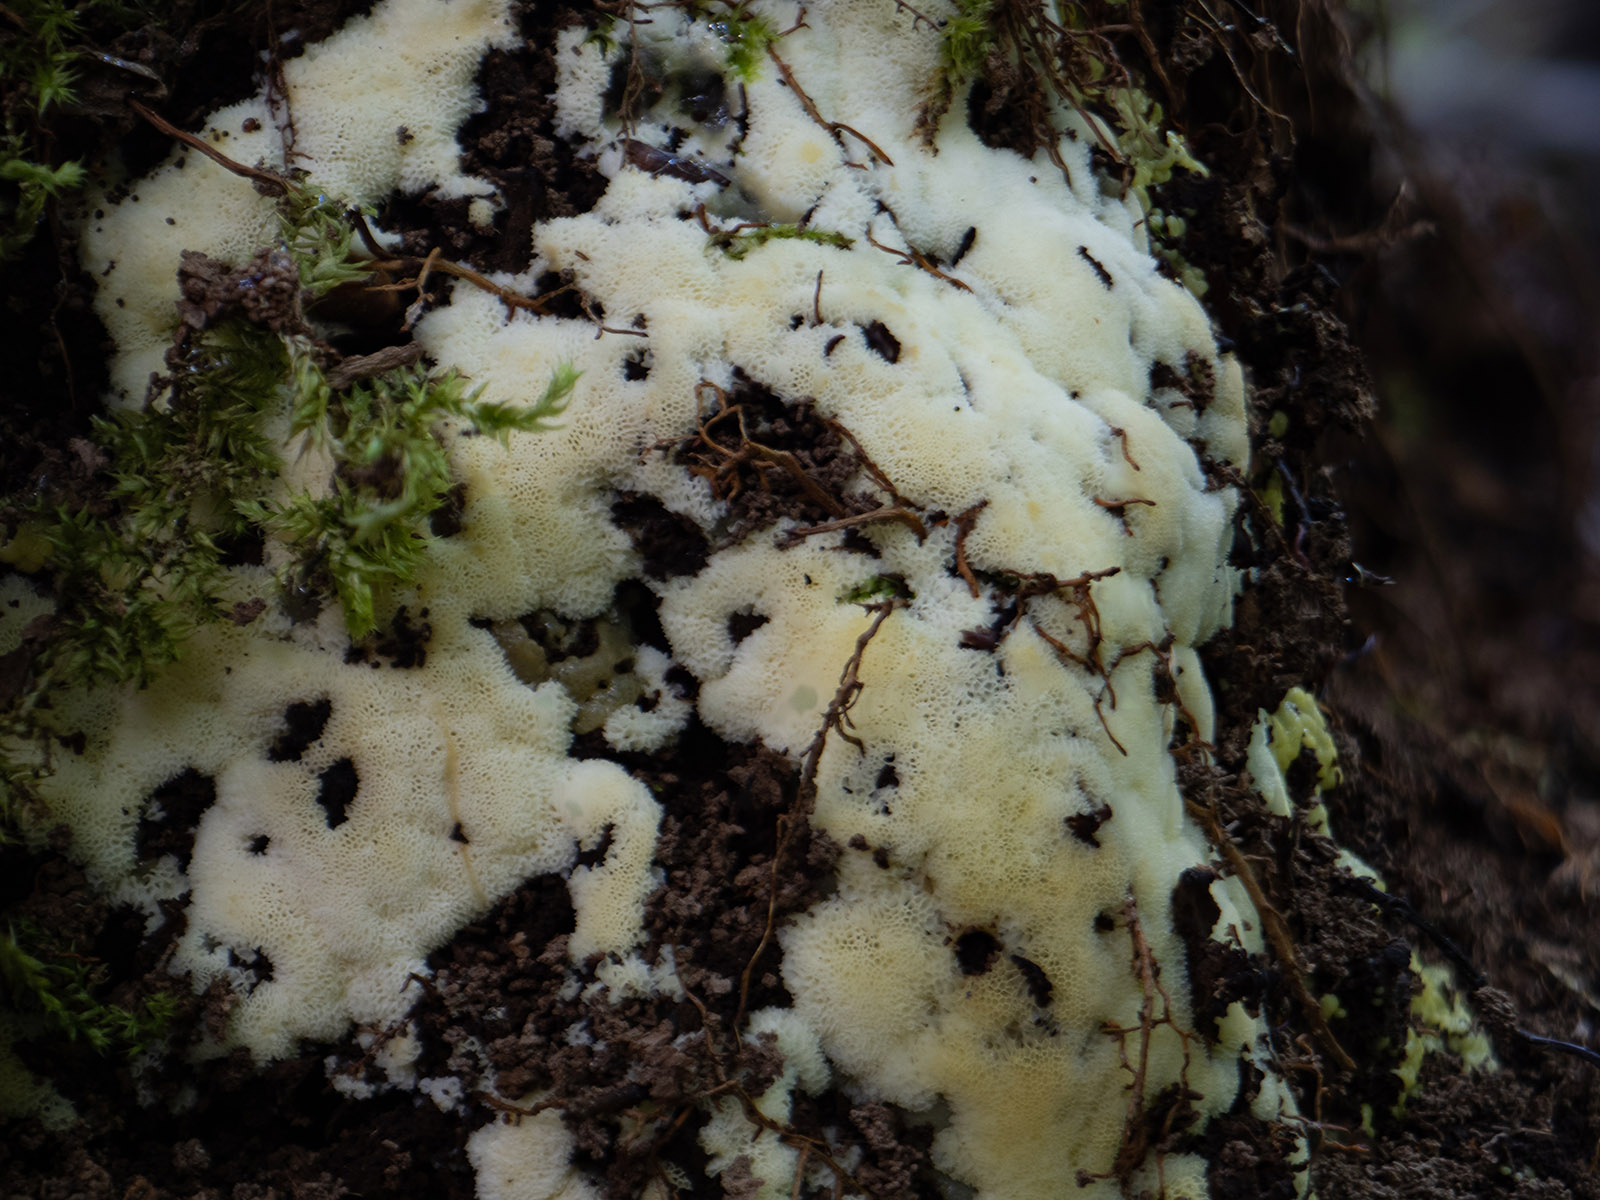 Сeratiomyxa fruticulosa var. porioides. Природный парк G?rv?ln, июль 2020 года. Автор фото: Сутормина Марина